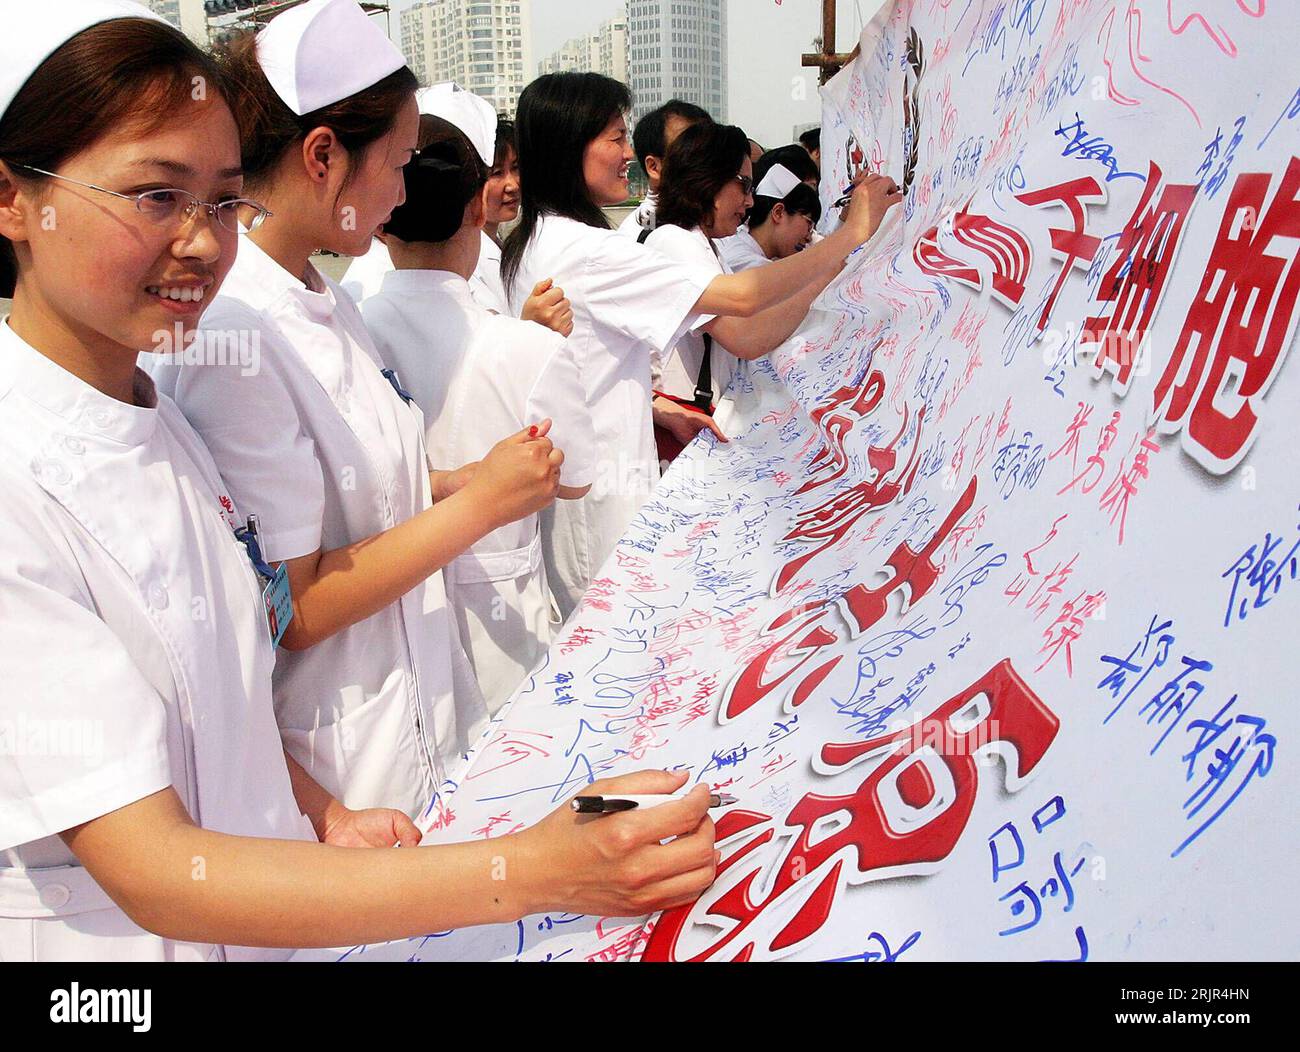 Bildnummer: 51293241  Datum: 12.06.2006  Copyright: imago/Xinhua Krankenschwestern signieren ein Plakat während eines Spendenaufrufs für die Stammzellenforschung im chinesischen Qinghuangdao - PUBLICATIONxNOTxINxCHN, Personen; 2006, Qinghuangdao, Krankenschwester, unterschreiben, Unterschrift, Unterschriftenaktion, Plakate, Spendenaufruf; , quer, Kbdig, Gruppenbild, China,  , Medizin, Wissenschaft, Stock Photo